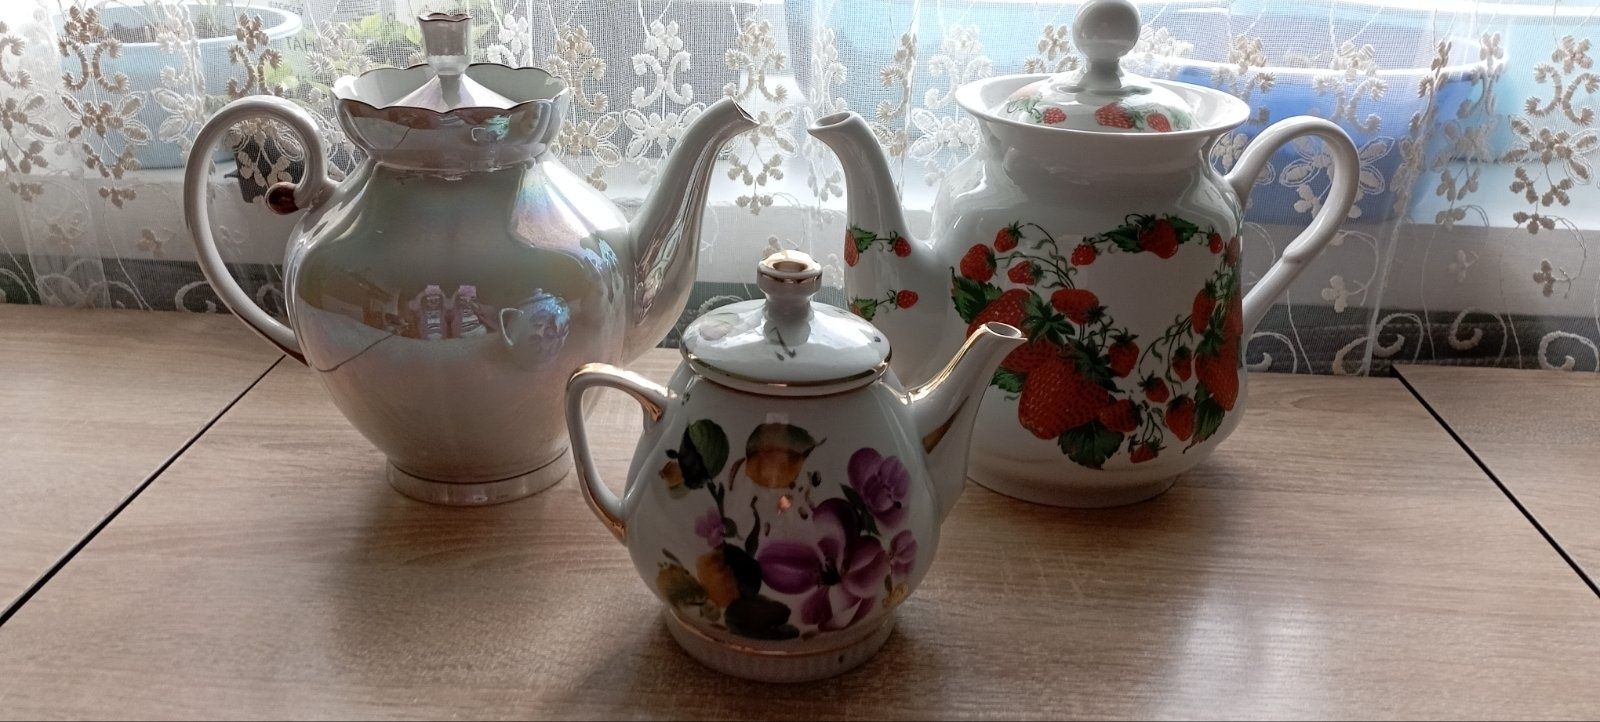 чайники времён СССР
- чайник наливной (2 литра) с клубникой